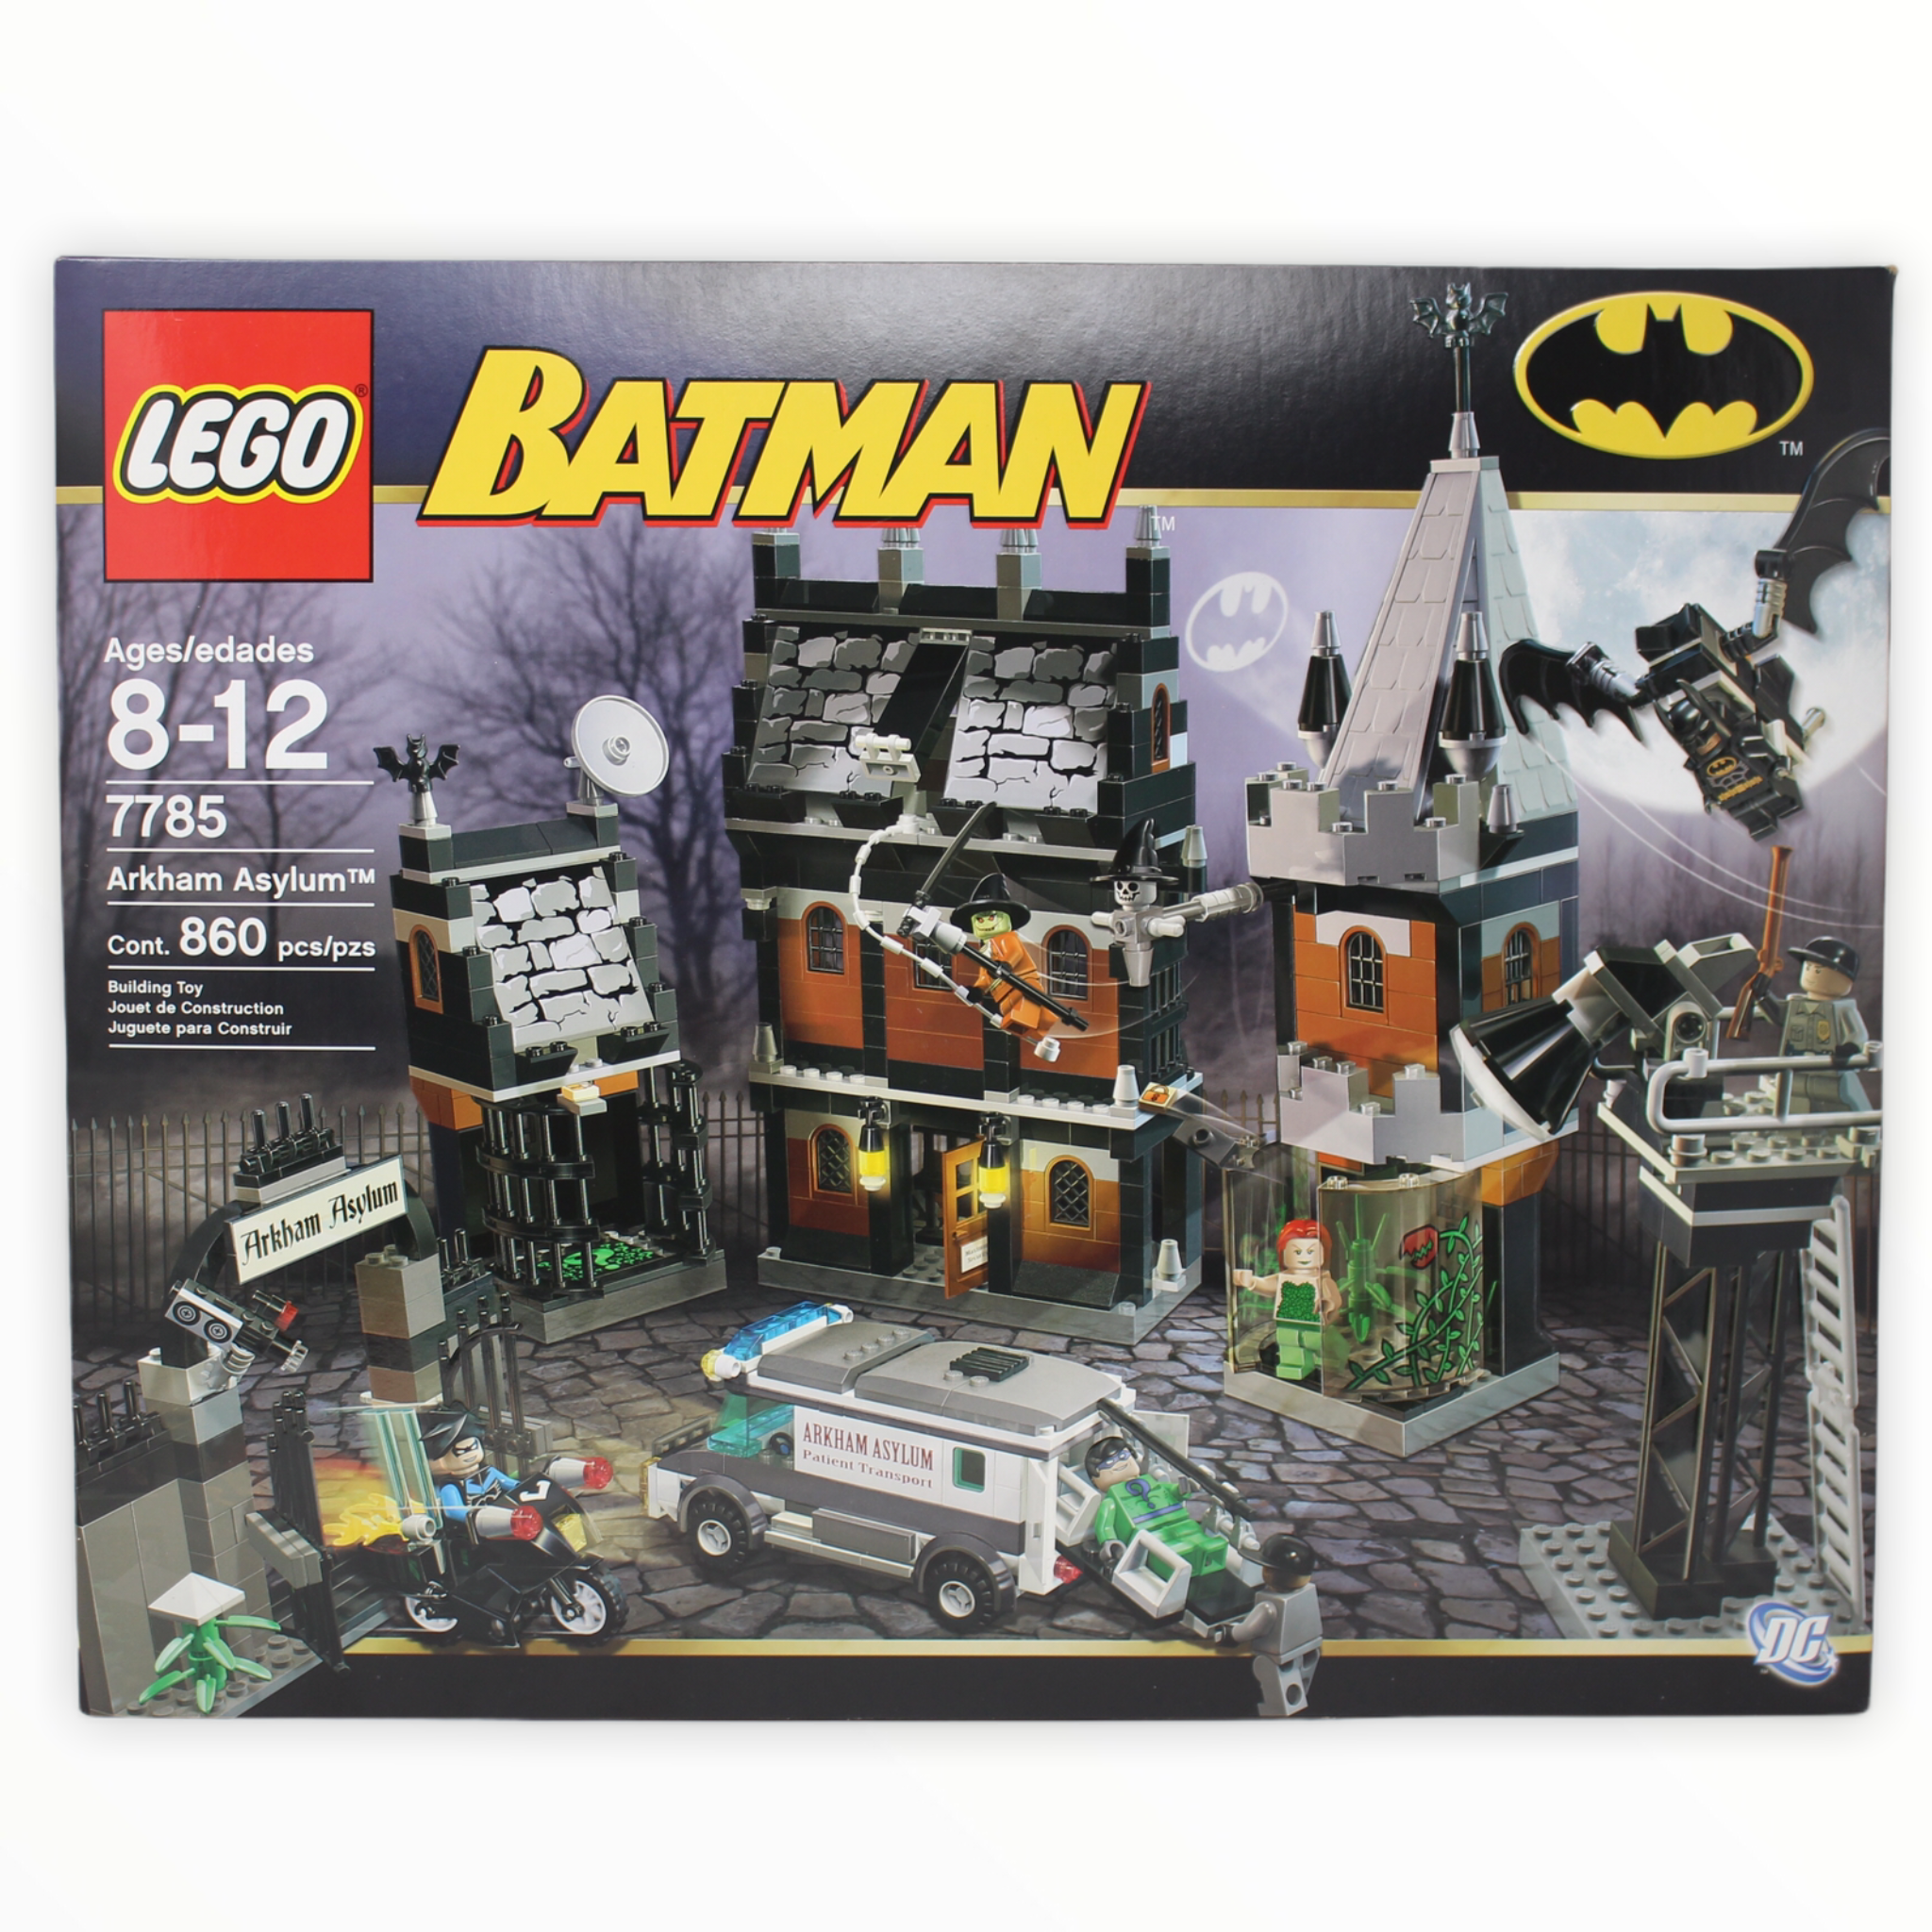 Retired Set 7785 Batman Arkham Asylum (2006)